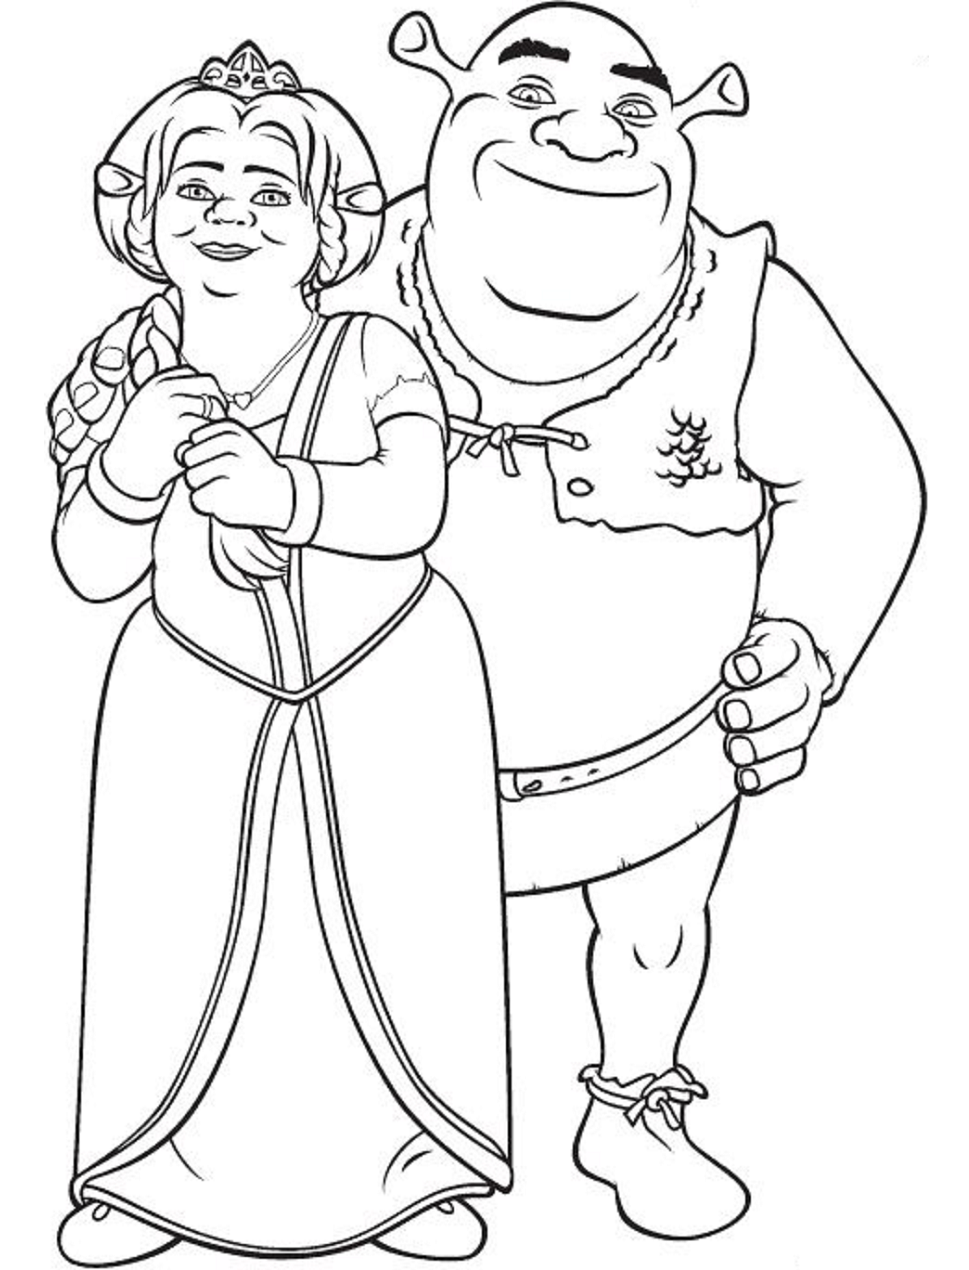 Fiona And Shrek Are Happy